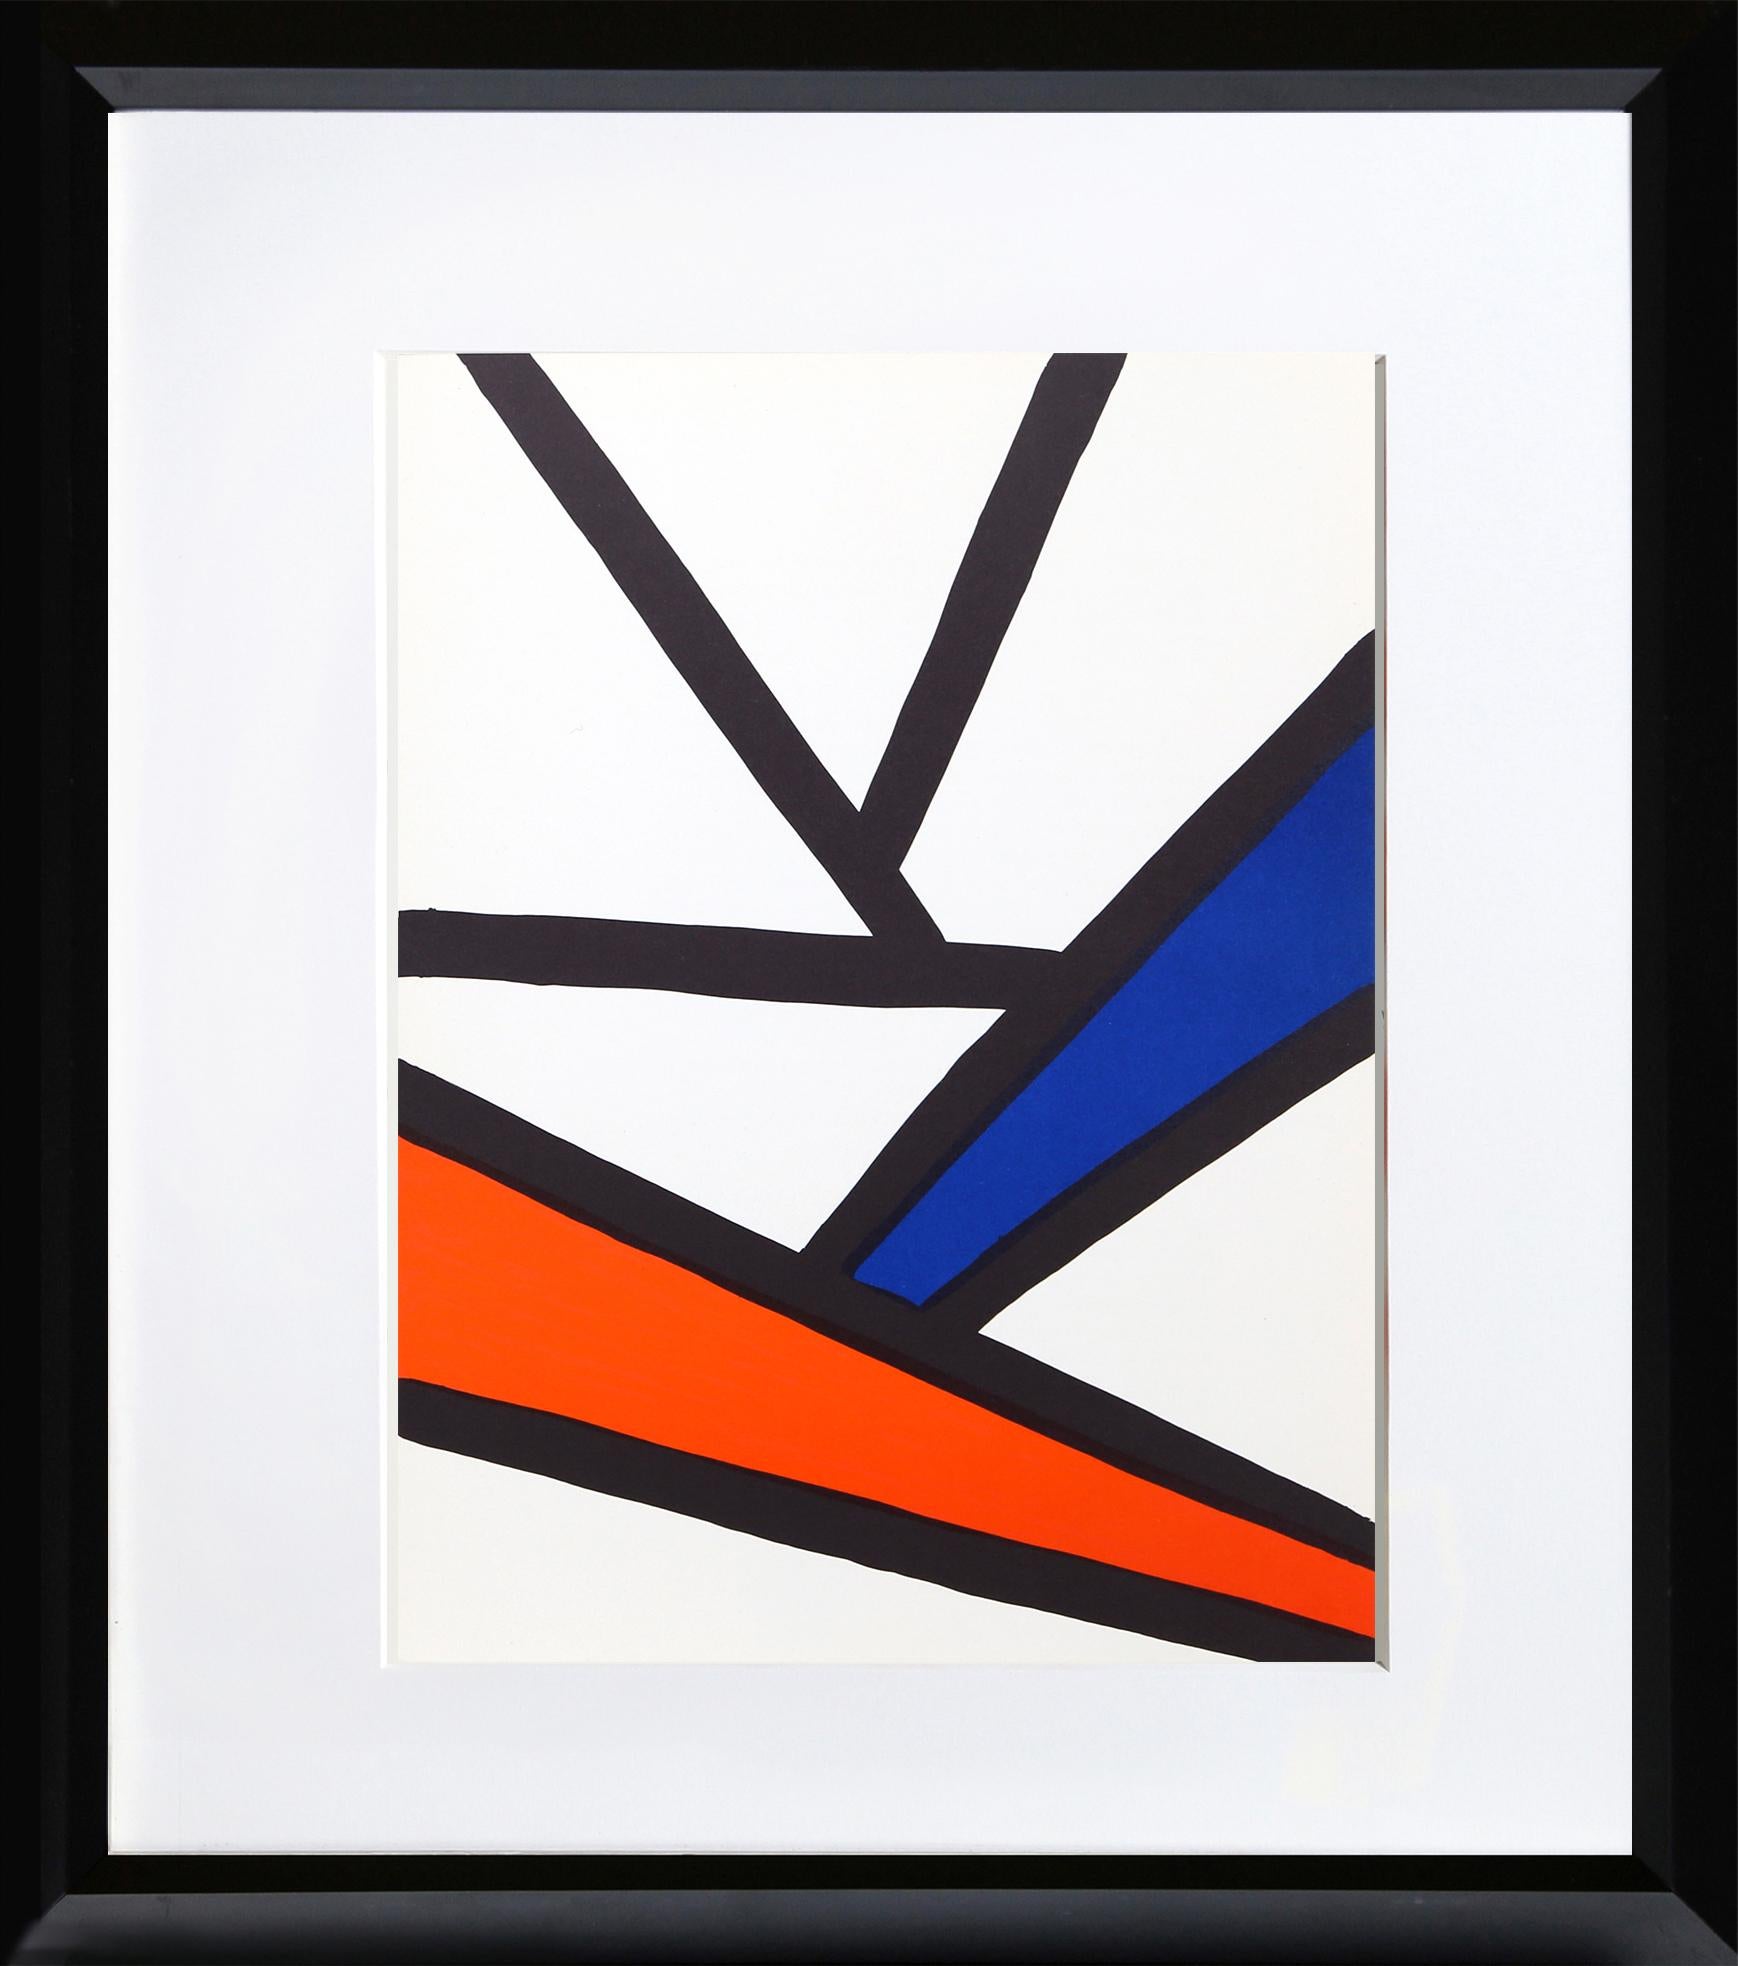 Intersections de Derriere Le Miroir d'Alexander Calder, Américain (1898-1976)
Date : 1968
Lithographie
Taille : 15 x 11 in. (38.1 x 27.94 cm)
Imprimeur : Maeght, Paris
Éditeur : Maeght Editeur, Paris